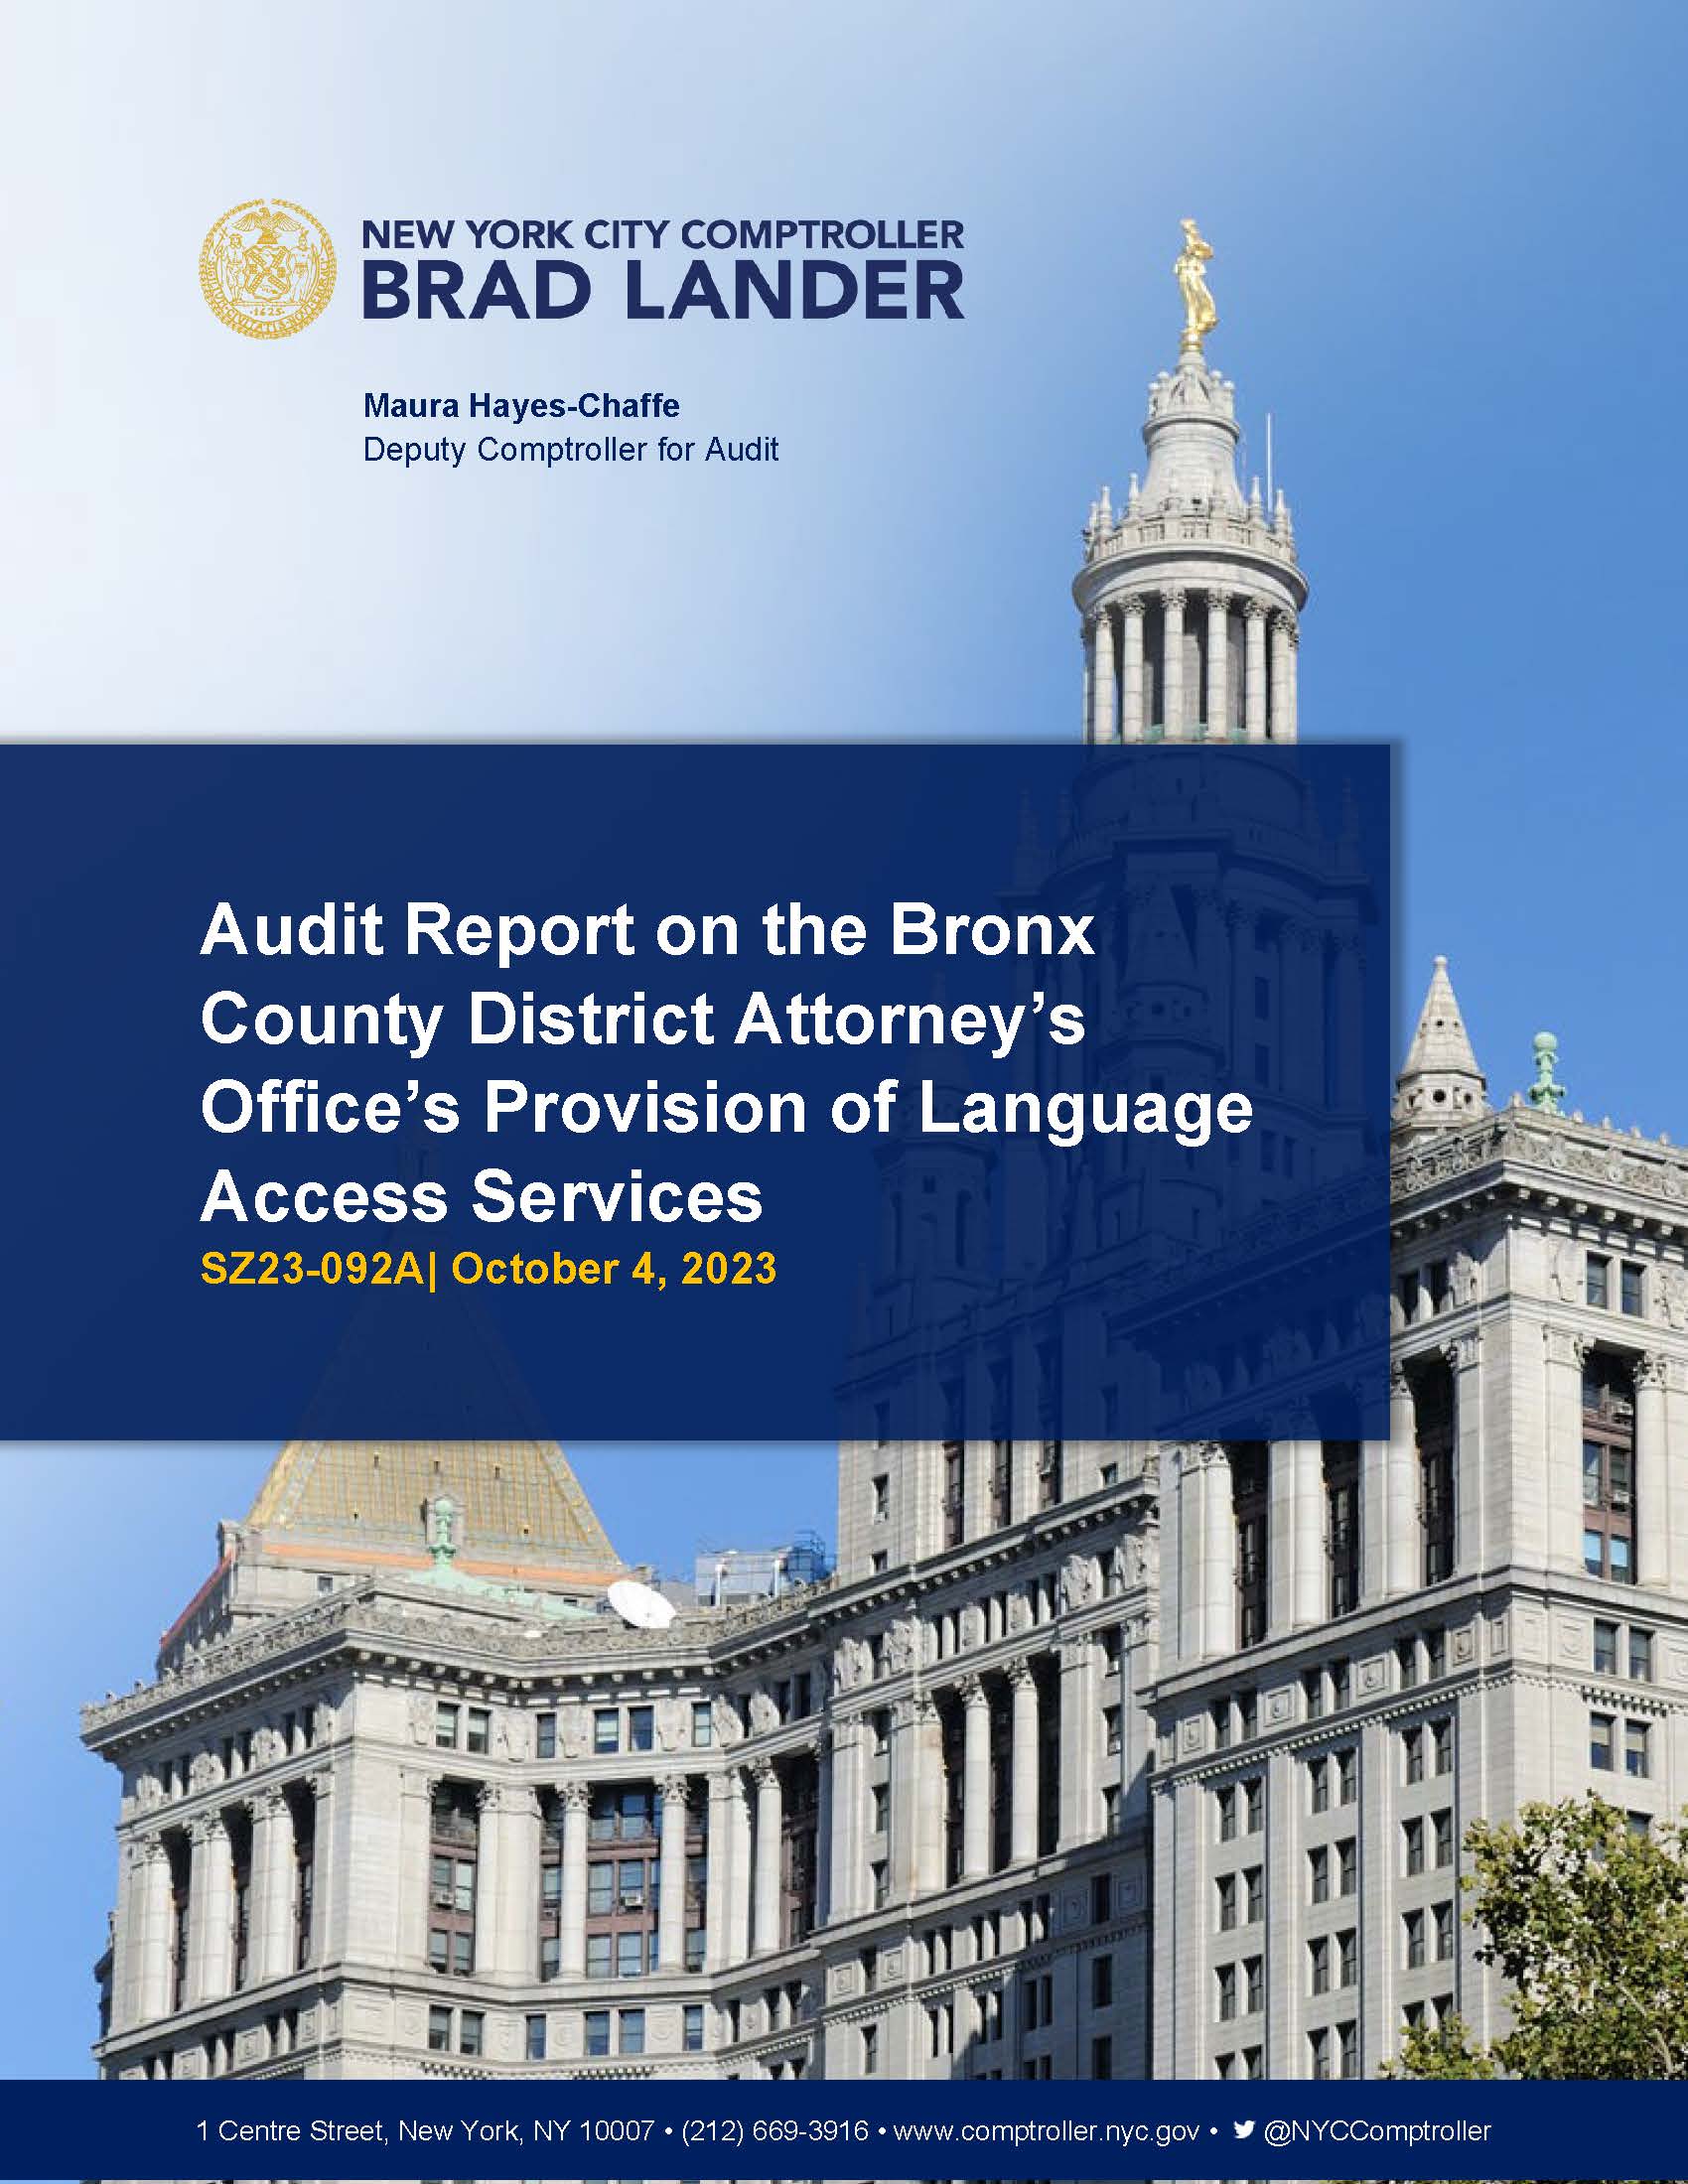 布朗克斯县地方检察官办公室提供语言服务的审计报告